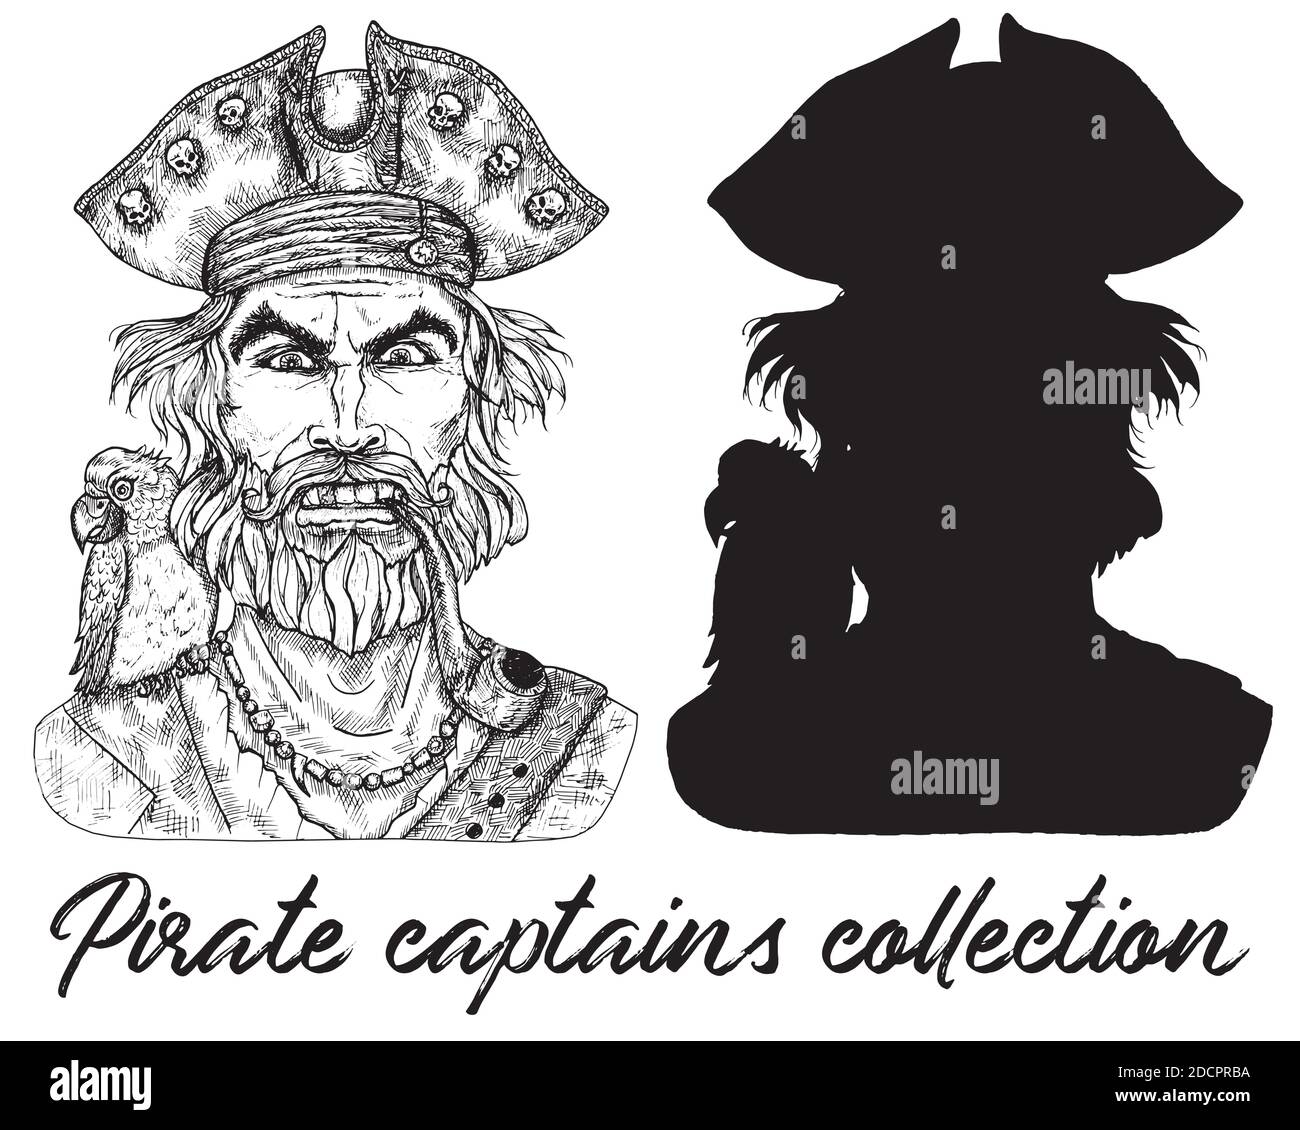 Capitaine de pirate en colère et silhouette isolée sur blanc. Illustration vectorielle gravée à la main de marin, de marin ou de marin dans un style ancien Illustration de Vecteur